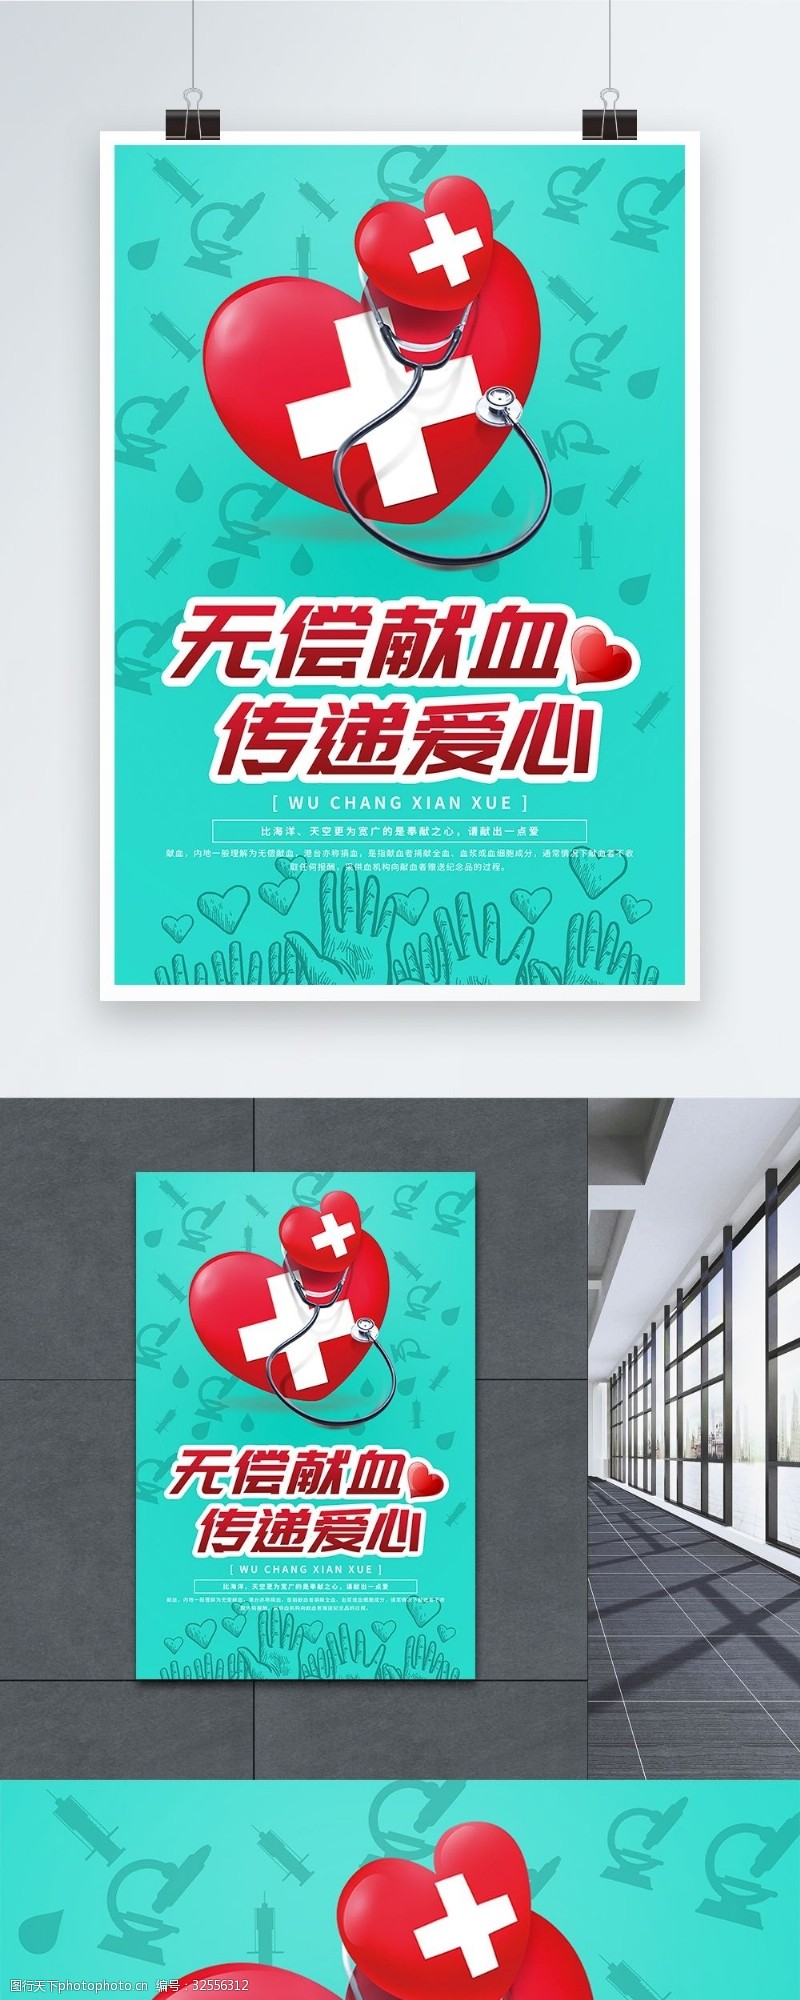 献血海报绿色无偿献血传递爱心公益海报